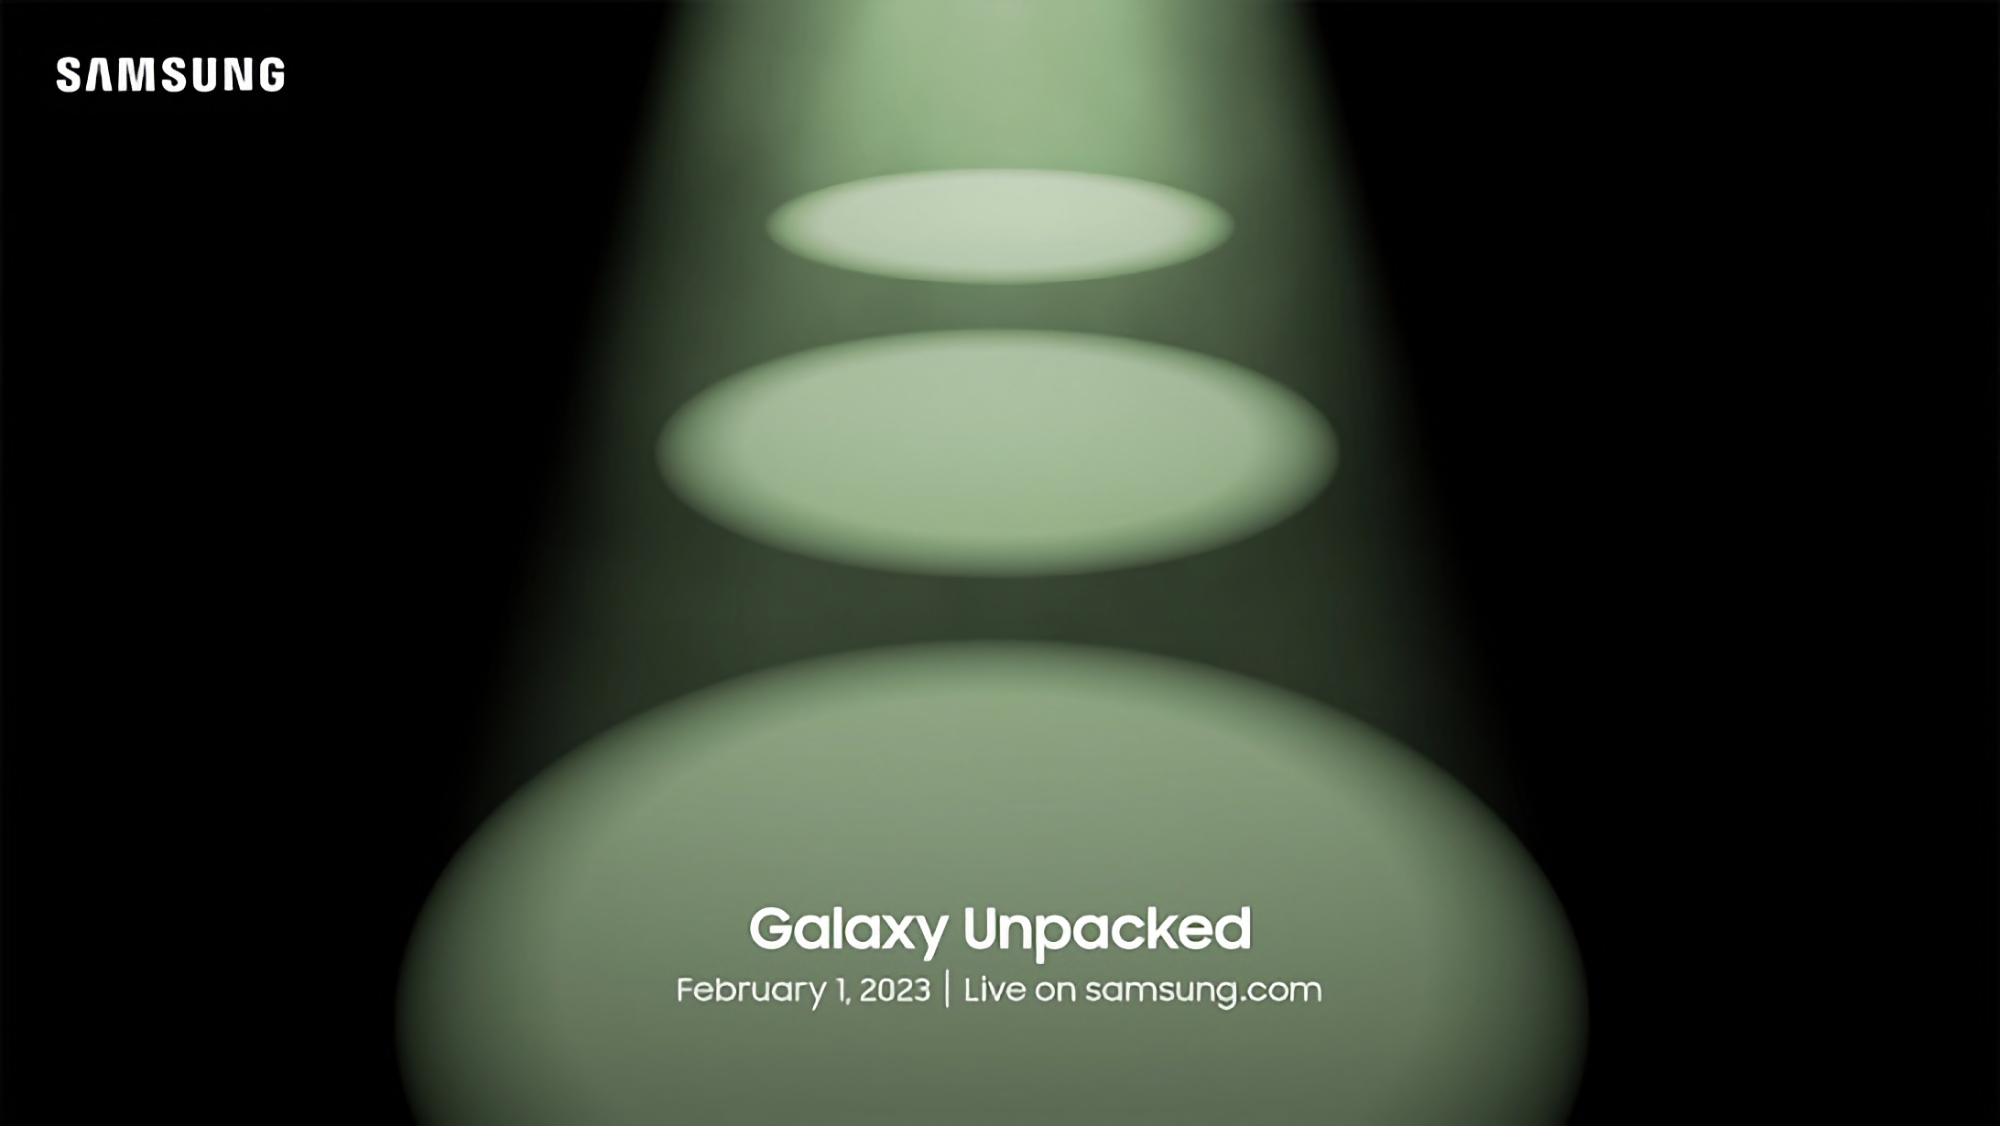 Teraz oficjalnie: Samsung ujawni flagowce Galaxy S23 podczas premiery Galaxy Unpacked 1 lutego